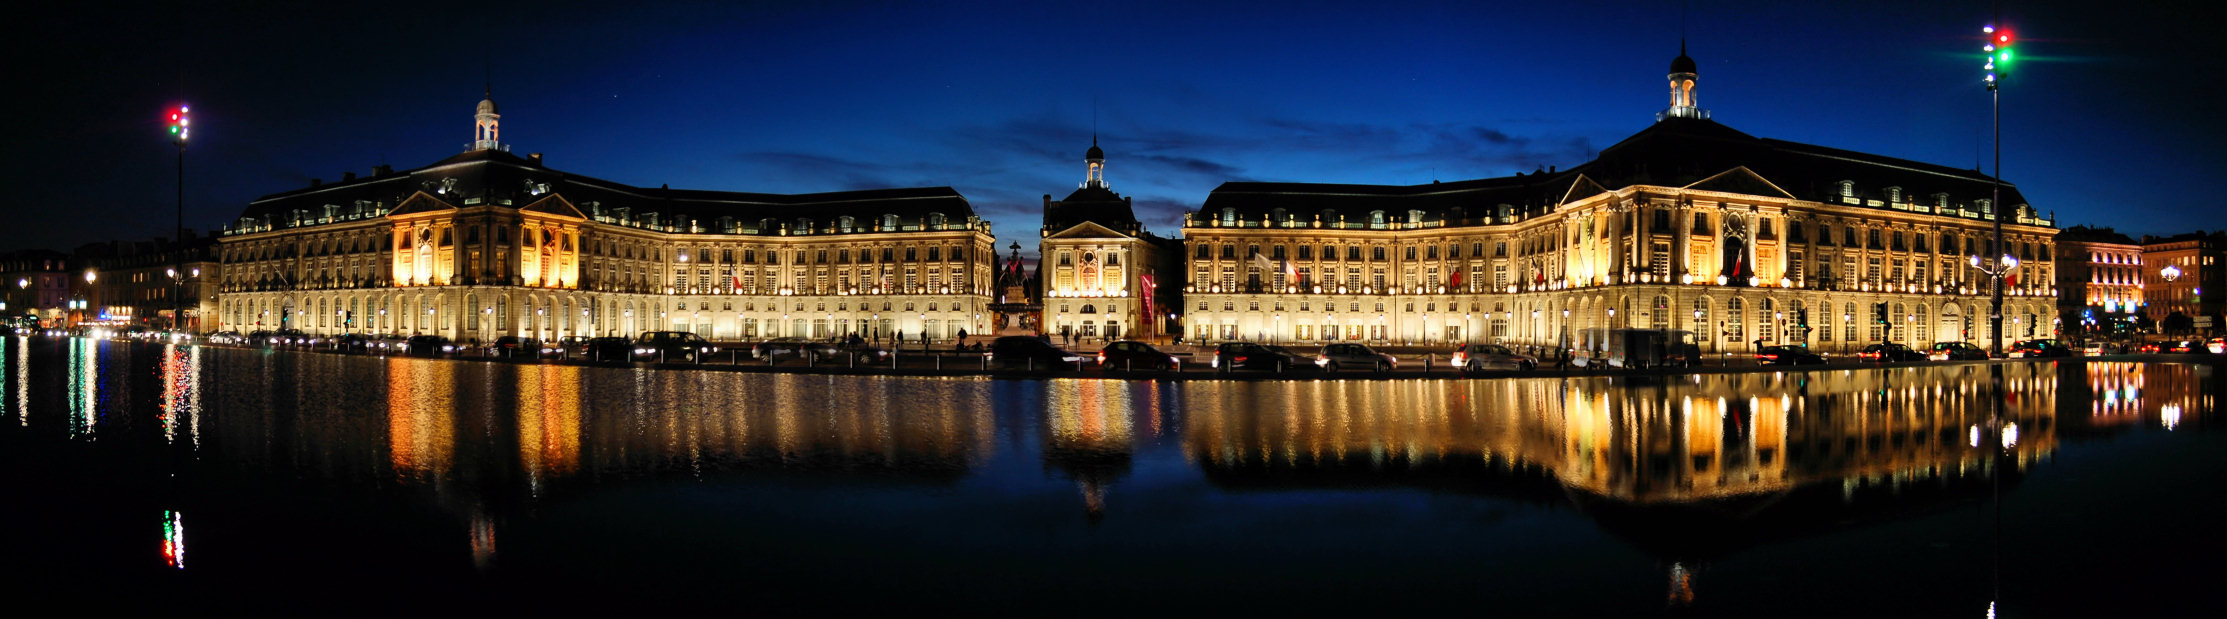 Place de la Bourse, Bordeaux. Il punto di partenza di questo viaggio. La piazza è riflessa nello specchio d'acqua più grande del mondo